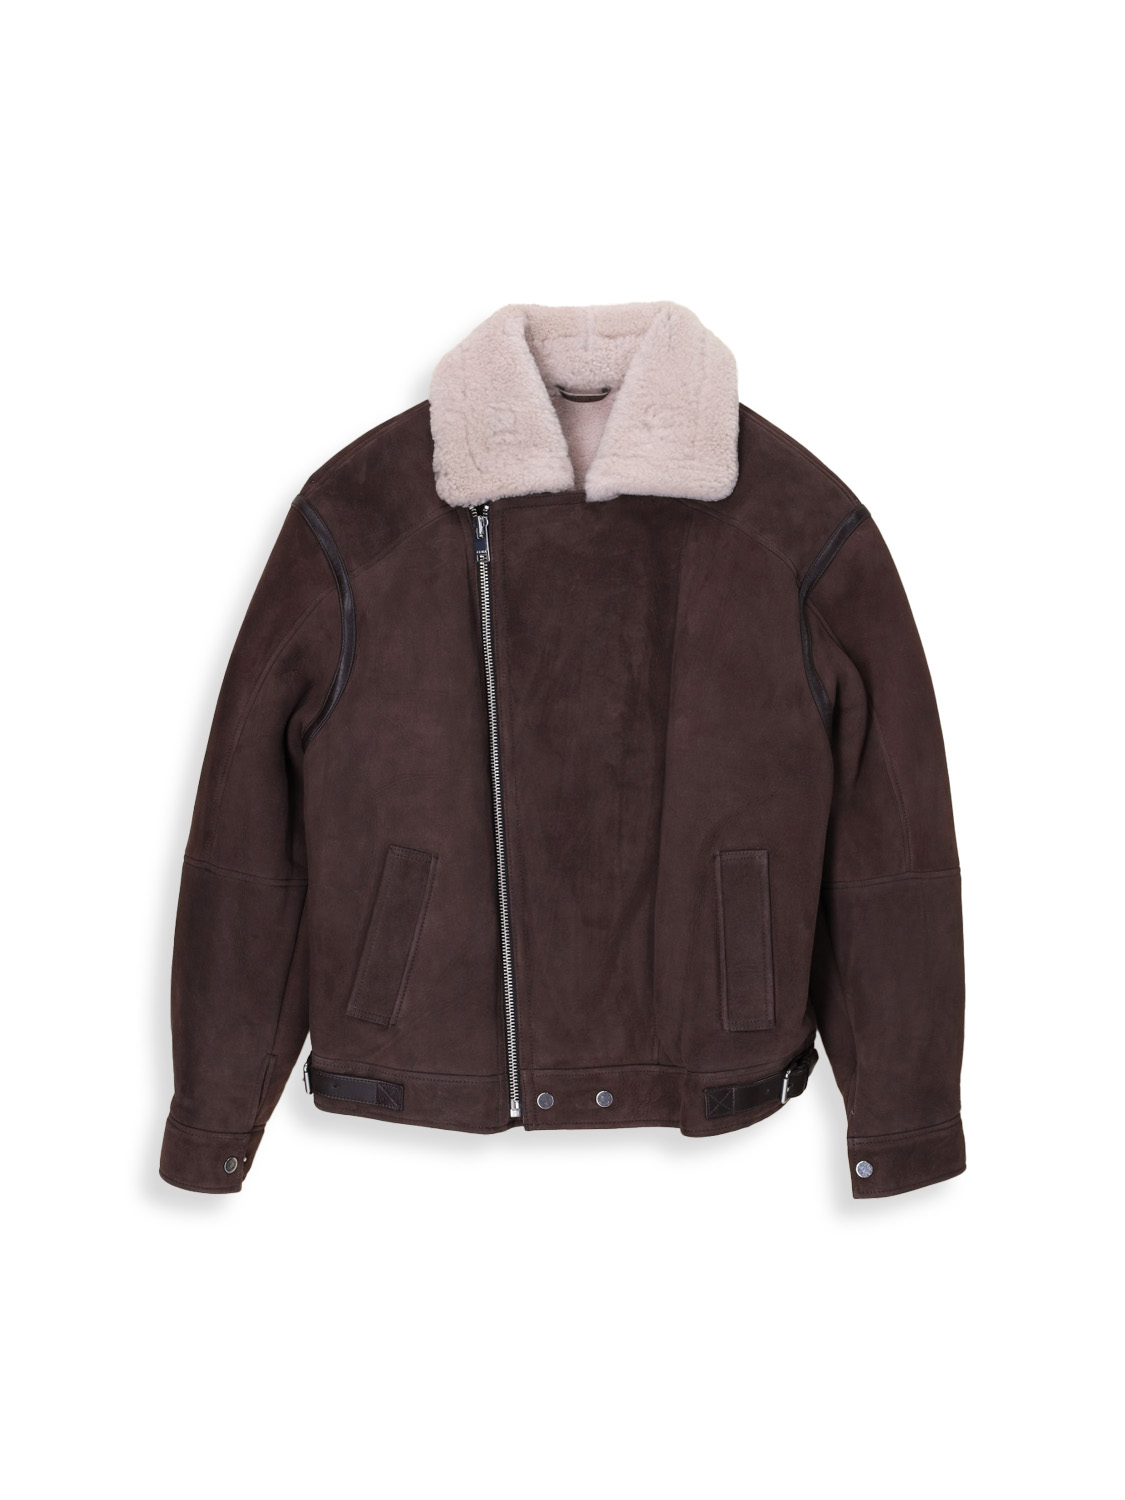 Mitta - lambskin leather jacket 